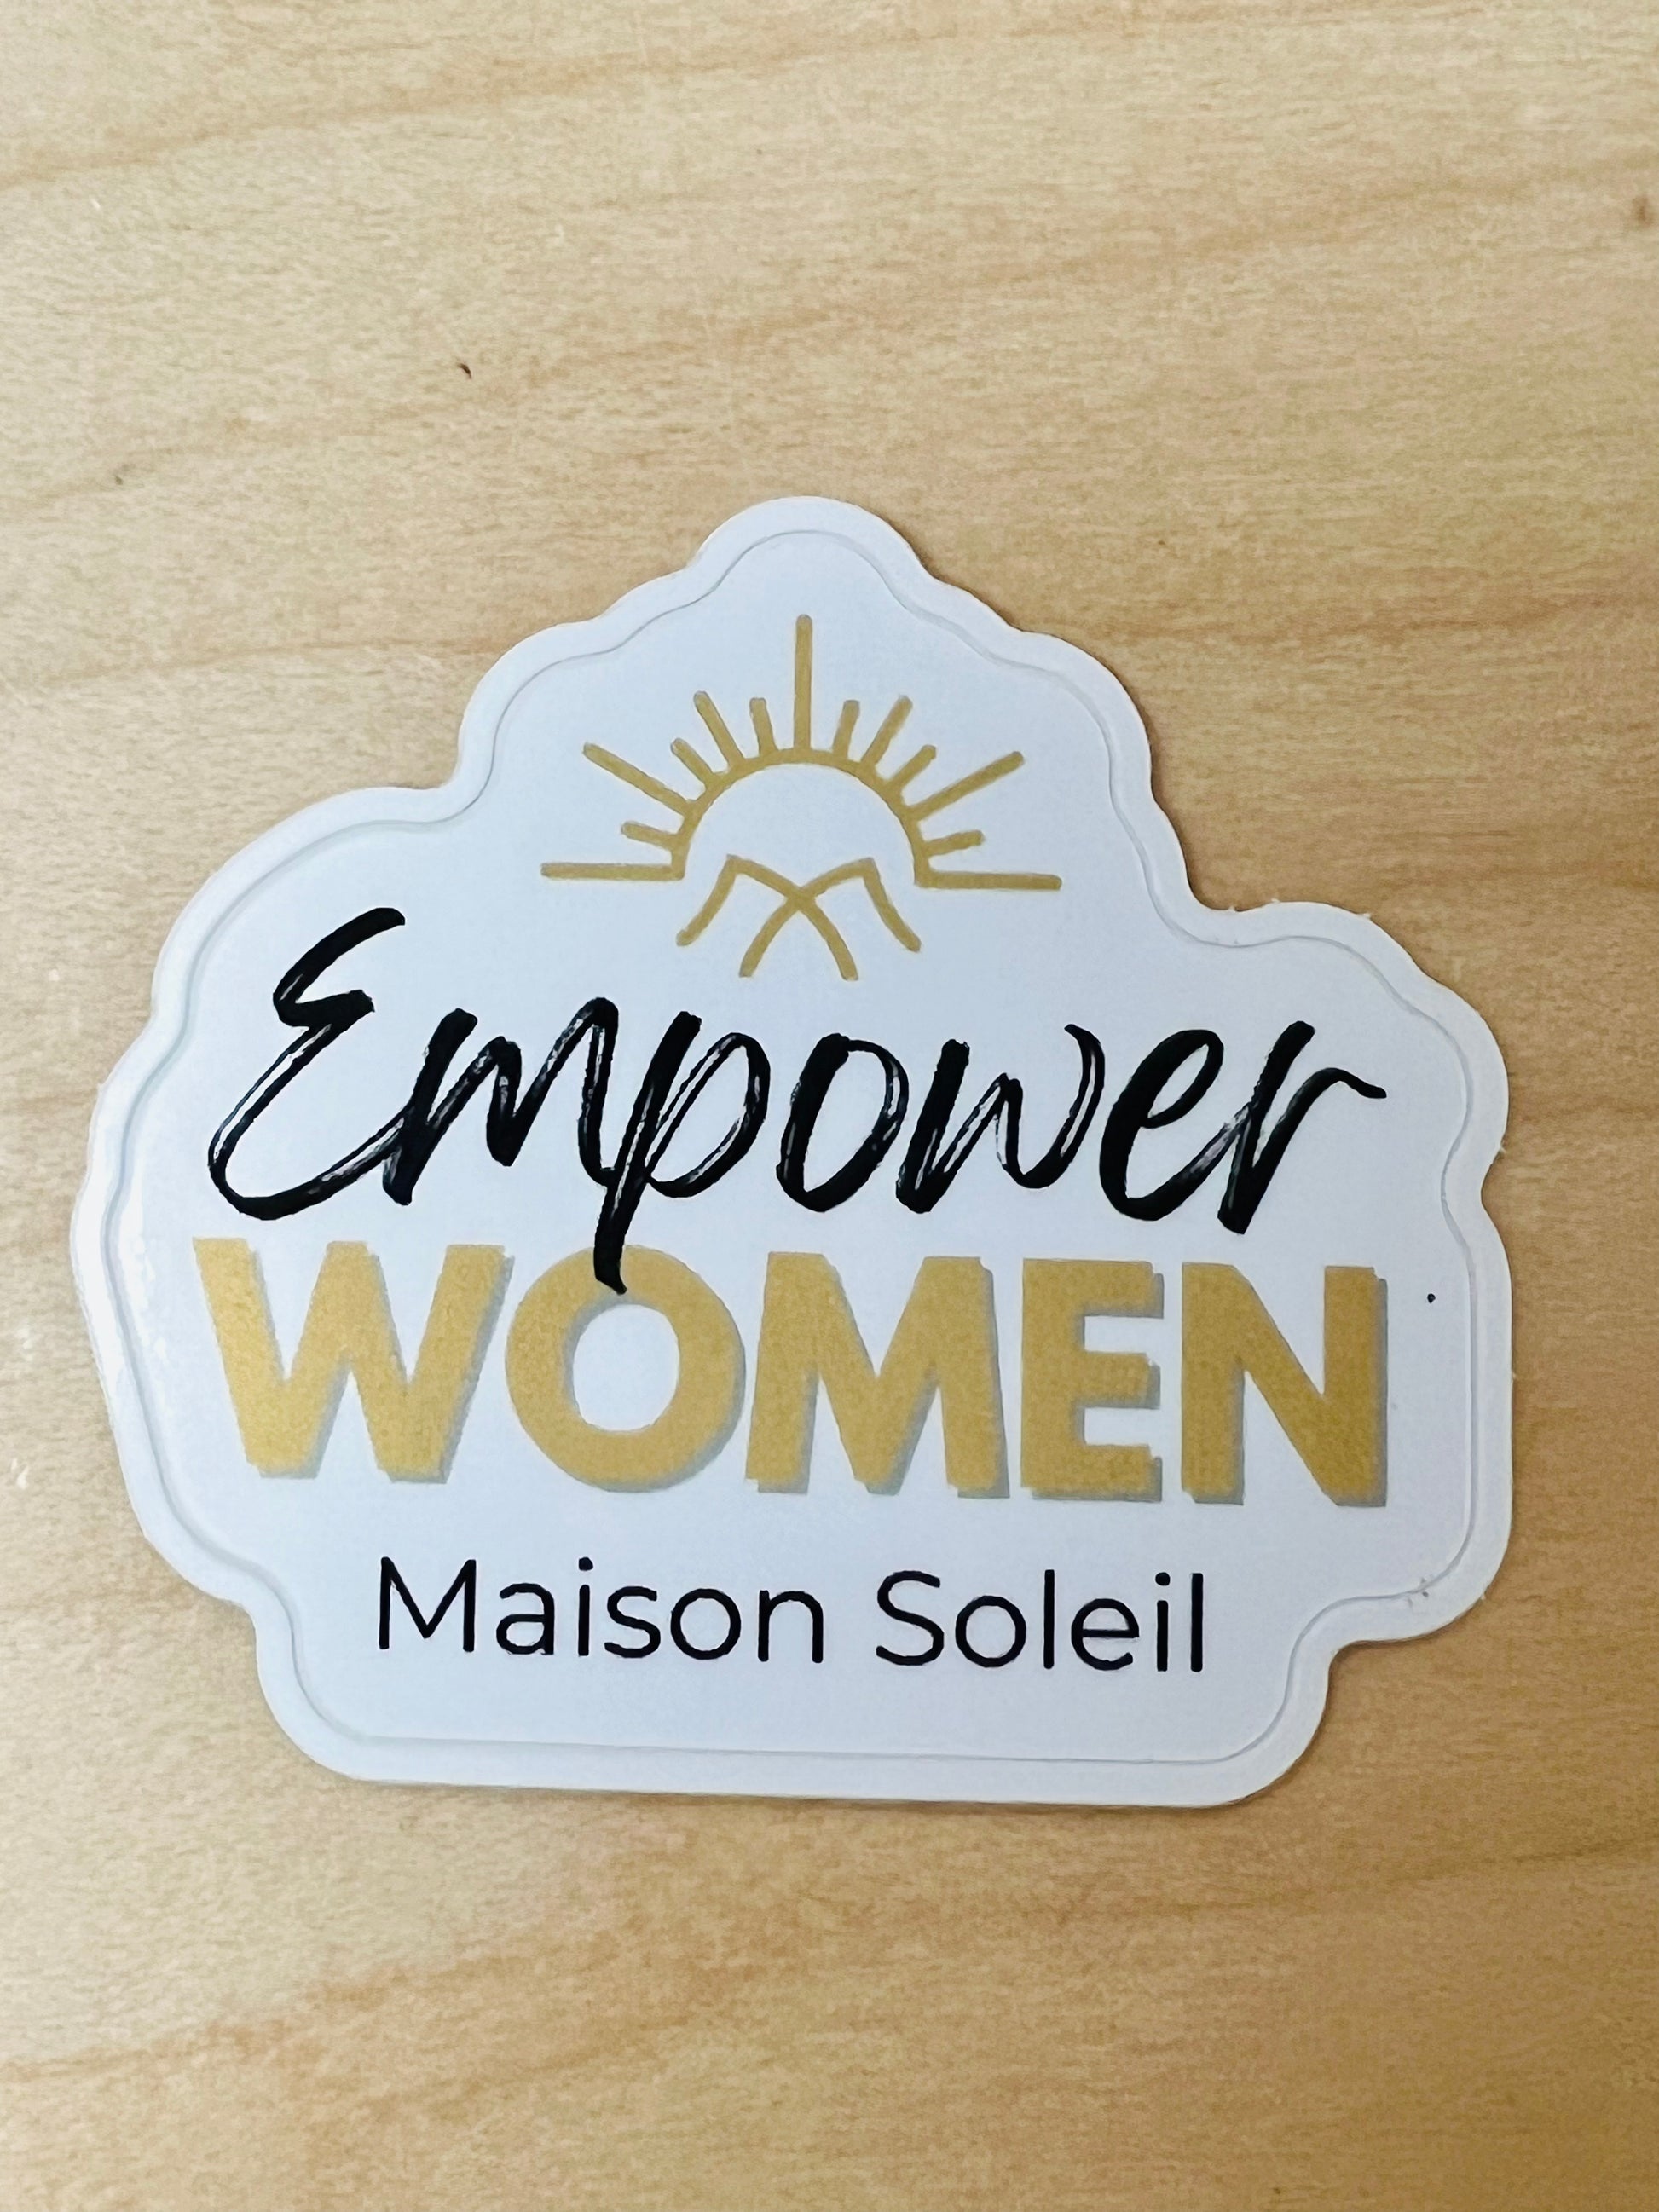 Die-cut Empower Women Sticker Home Goods Maison Soleil   